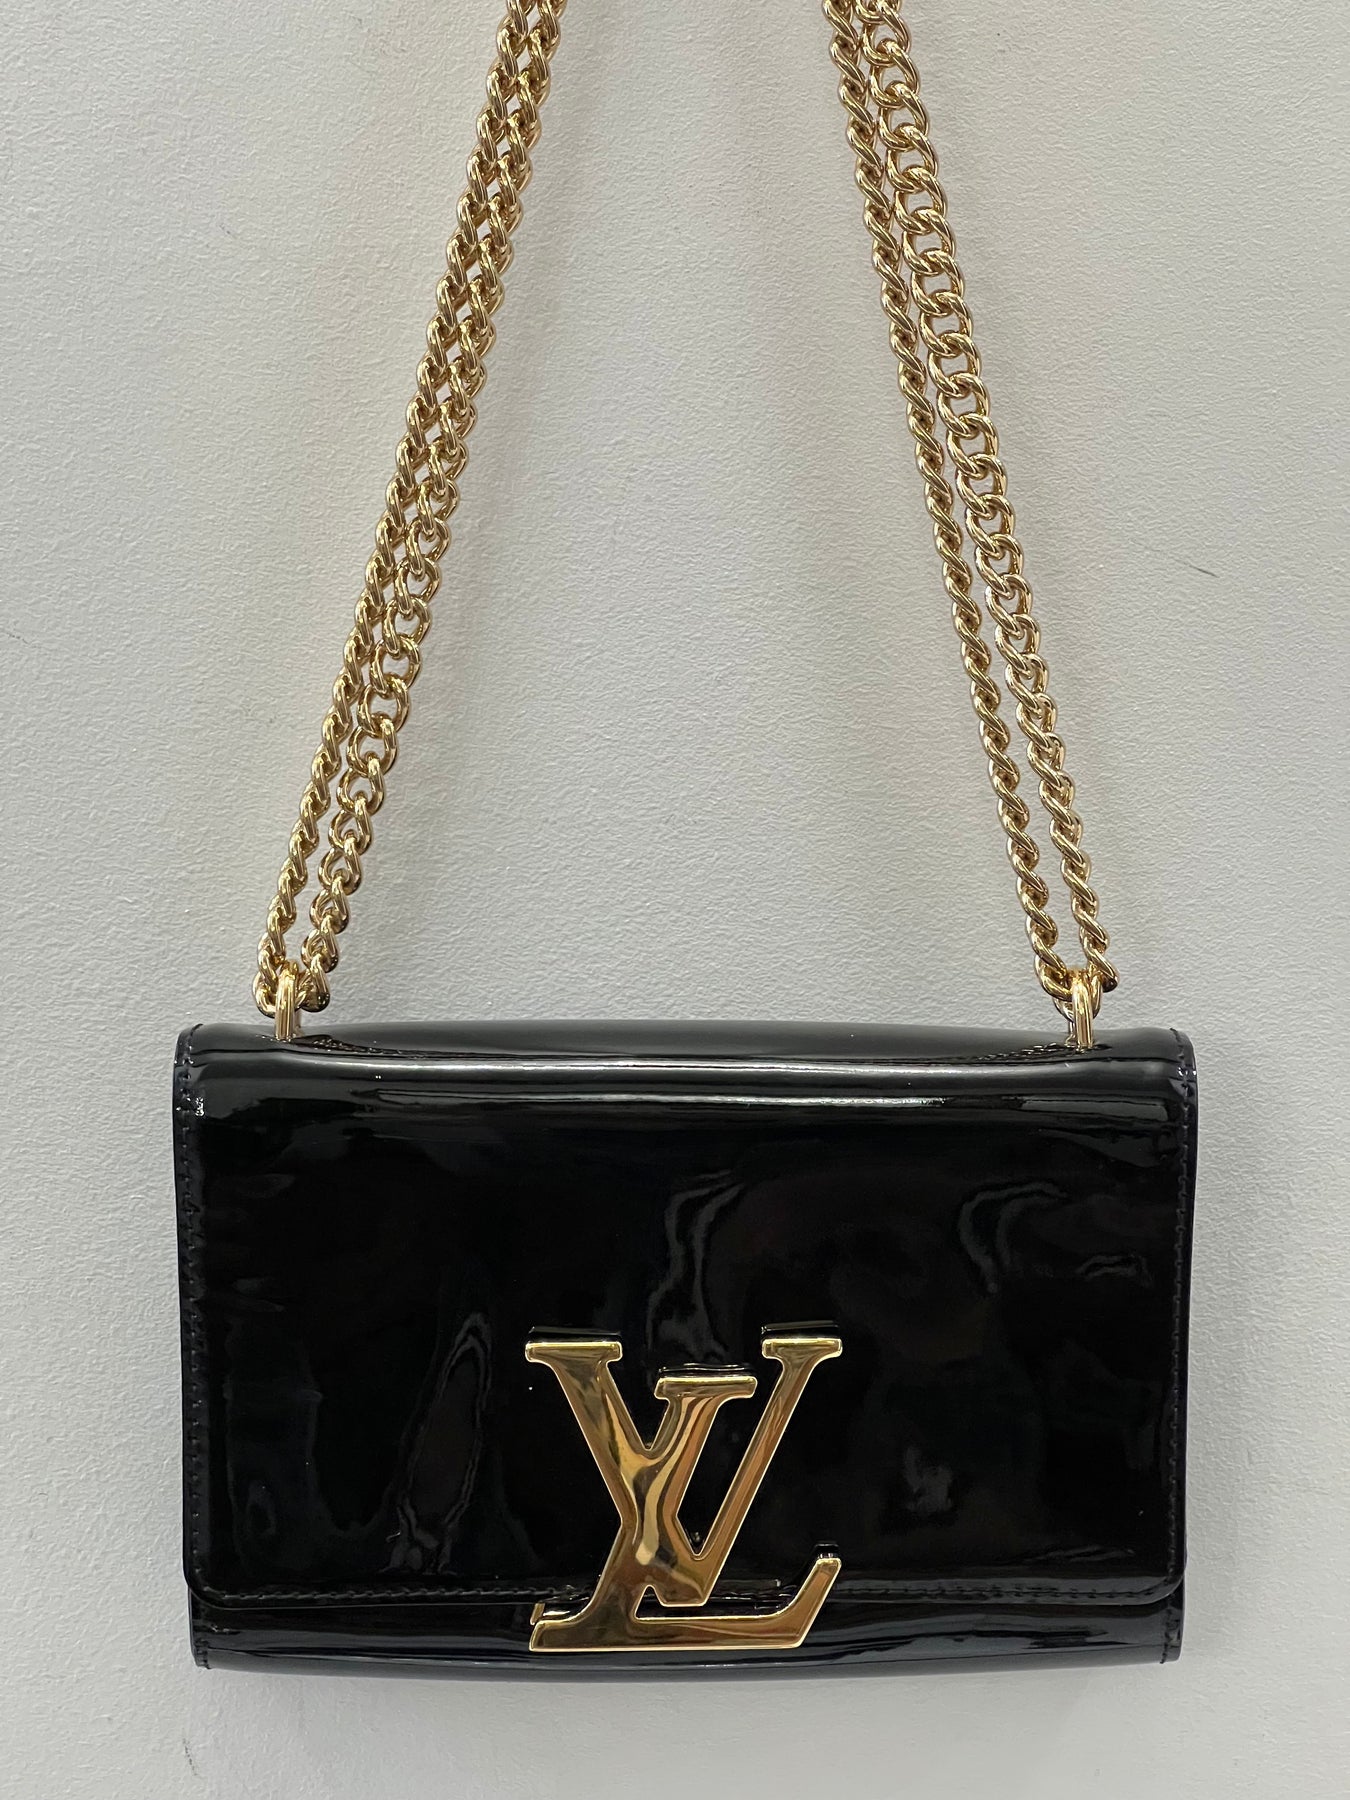 Louis Vuitton Patent Chain Louise mm Black